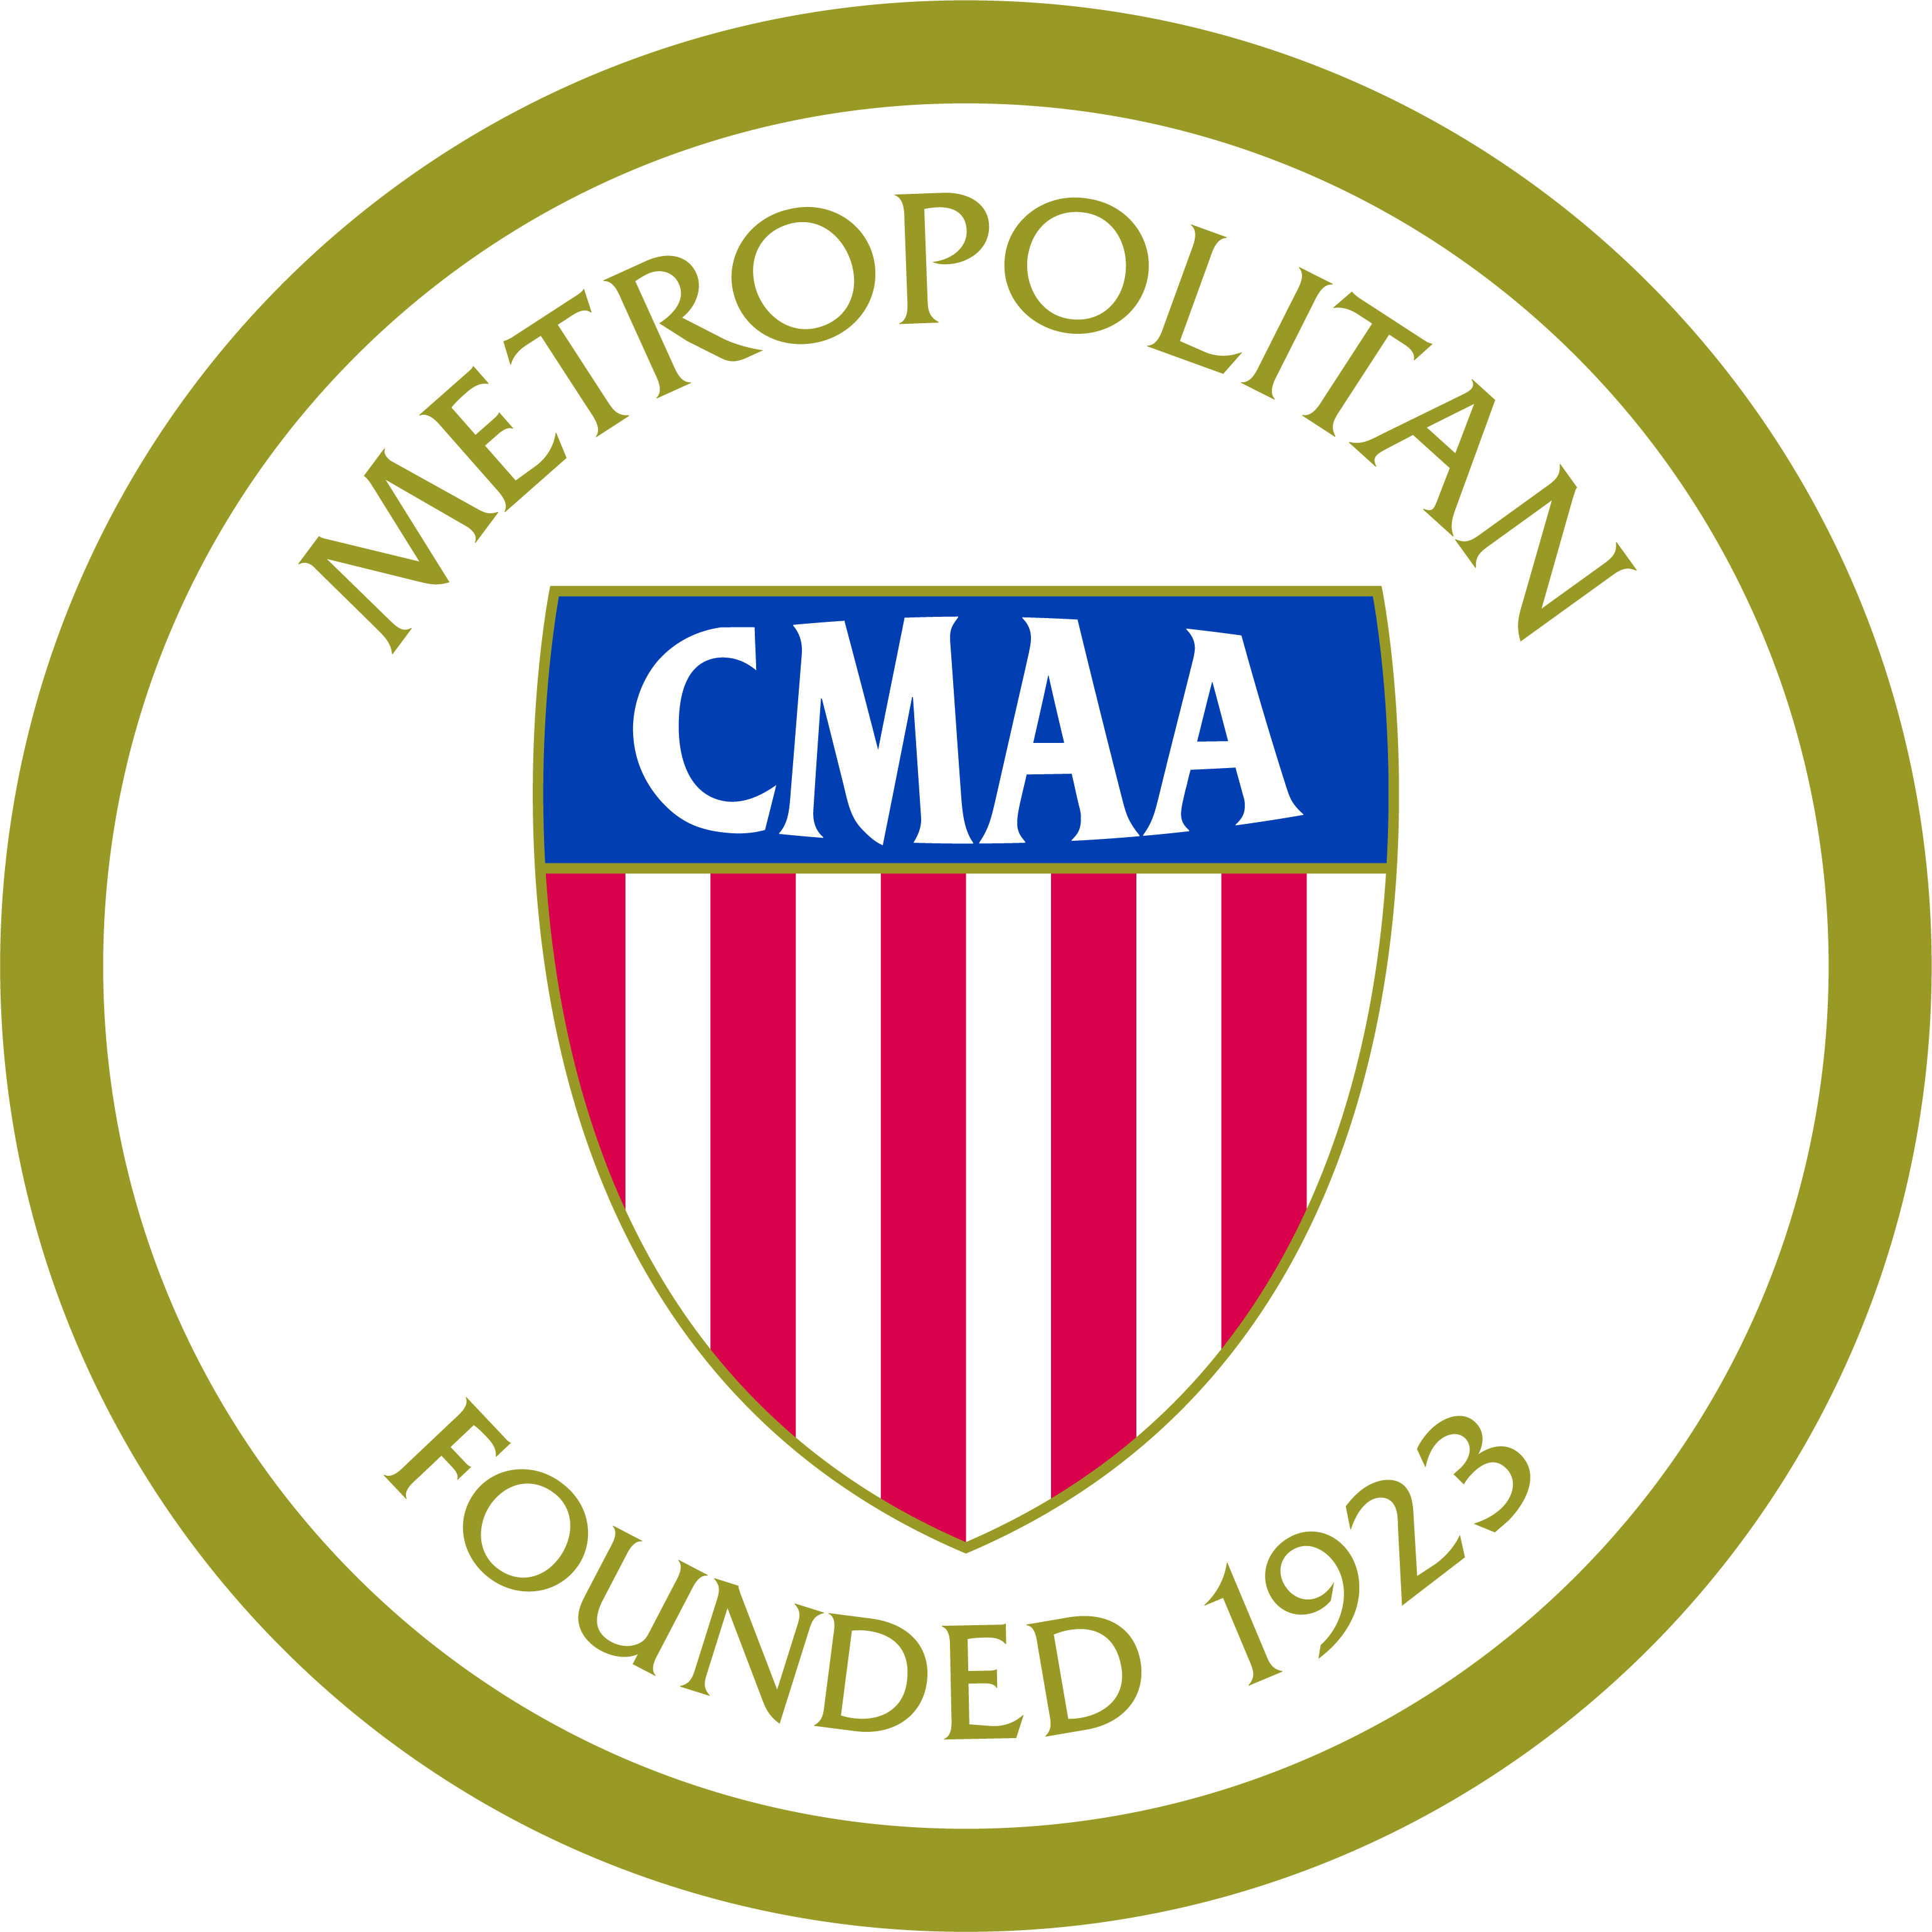 CMMA Logo